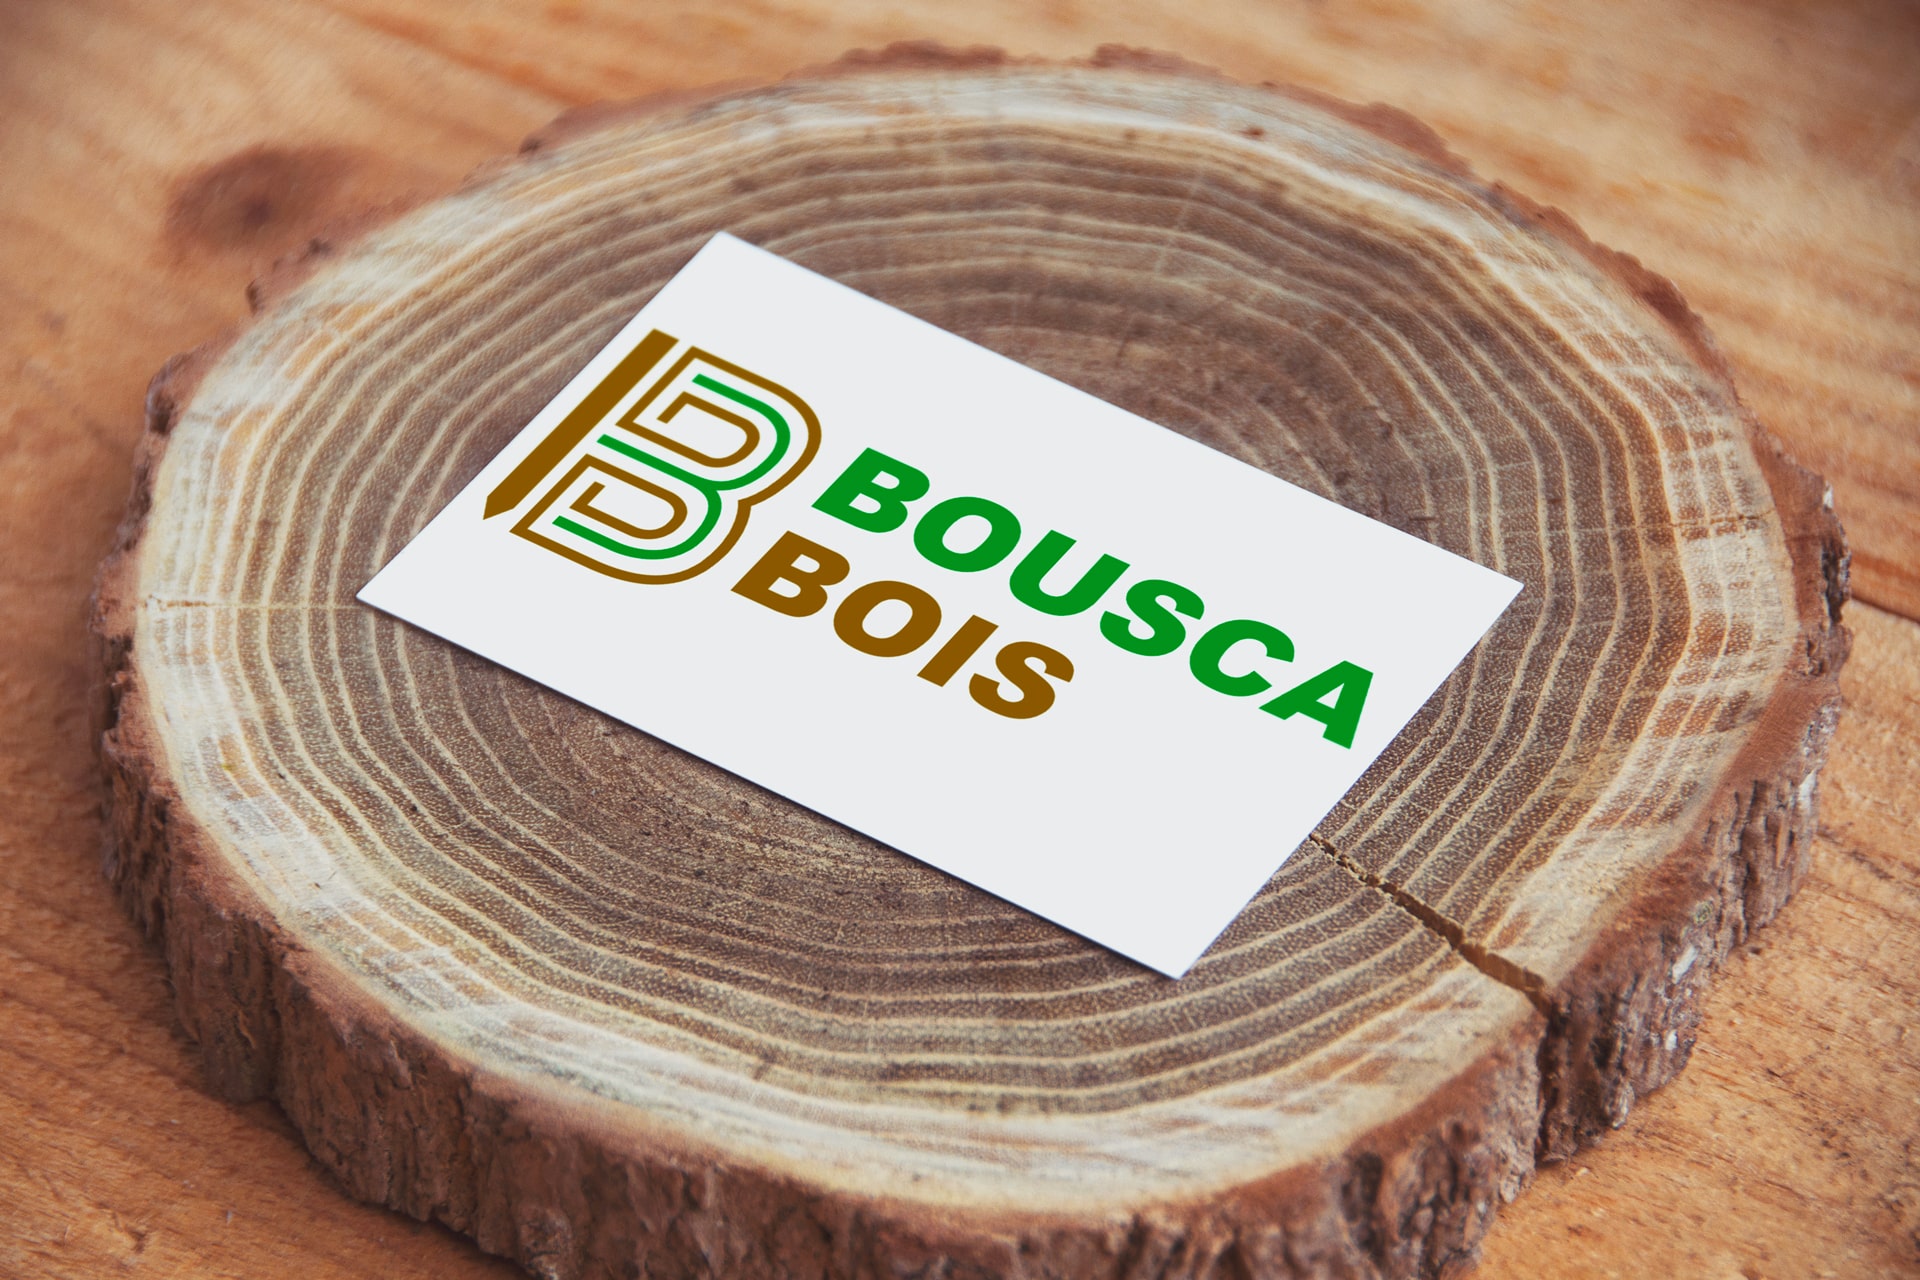 Logo Bousca bois